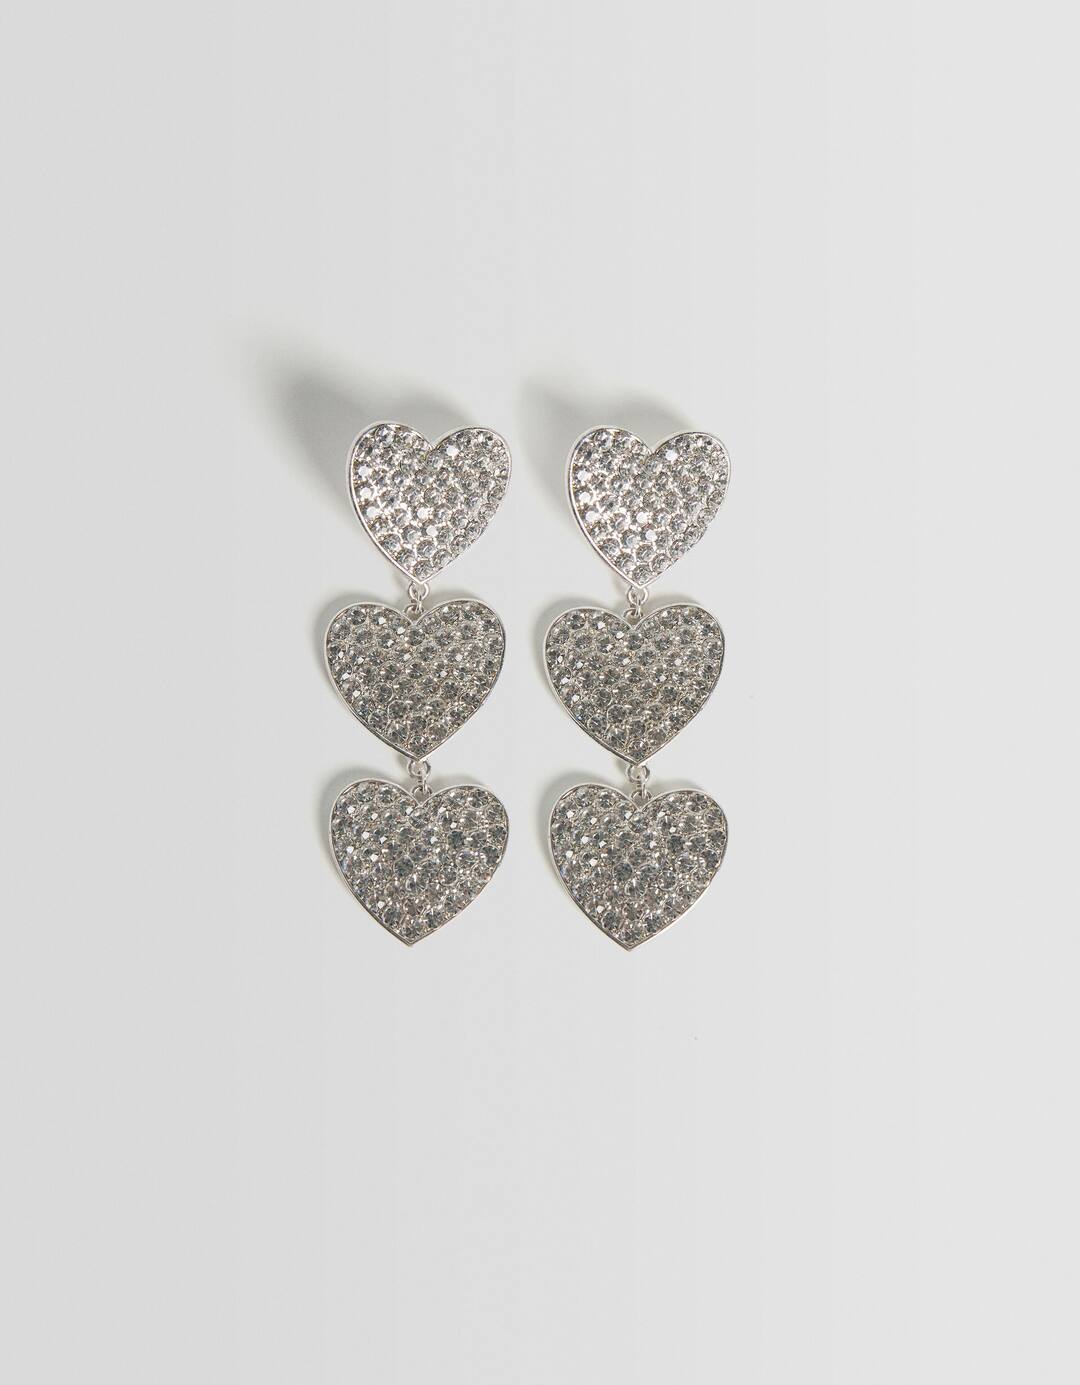 Rhinestone heart cascade earrings